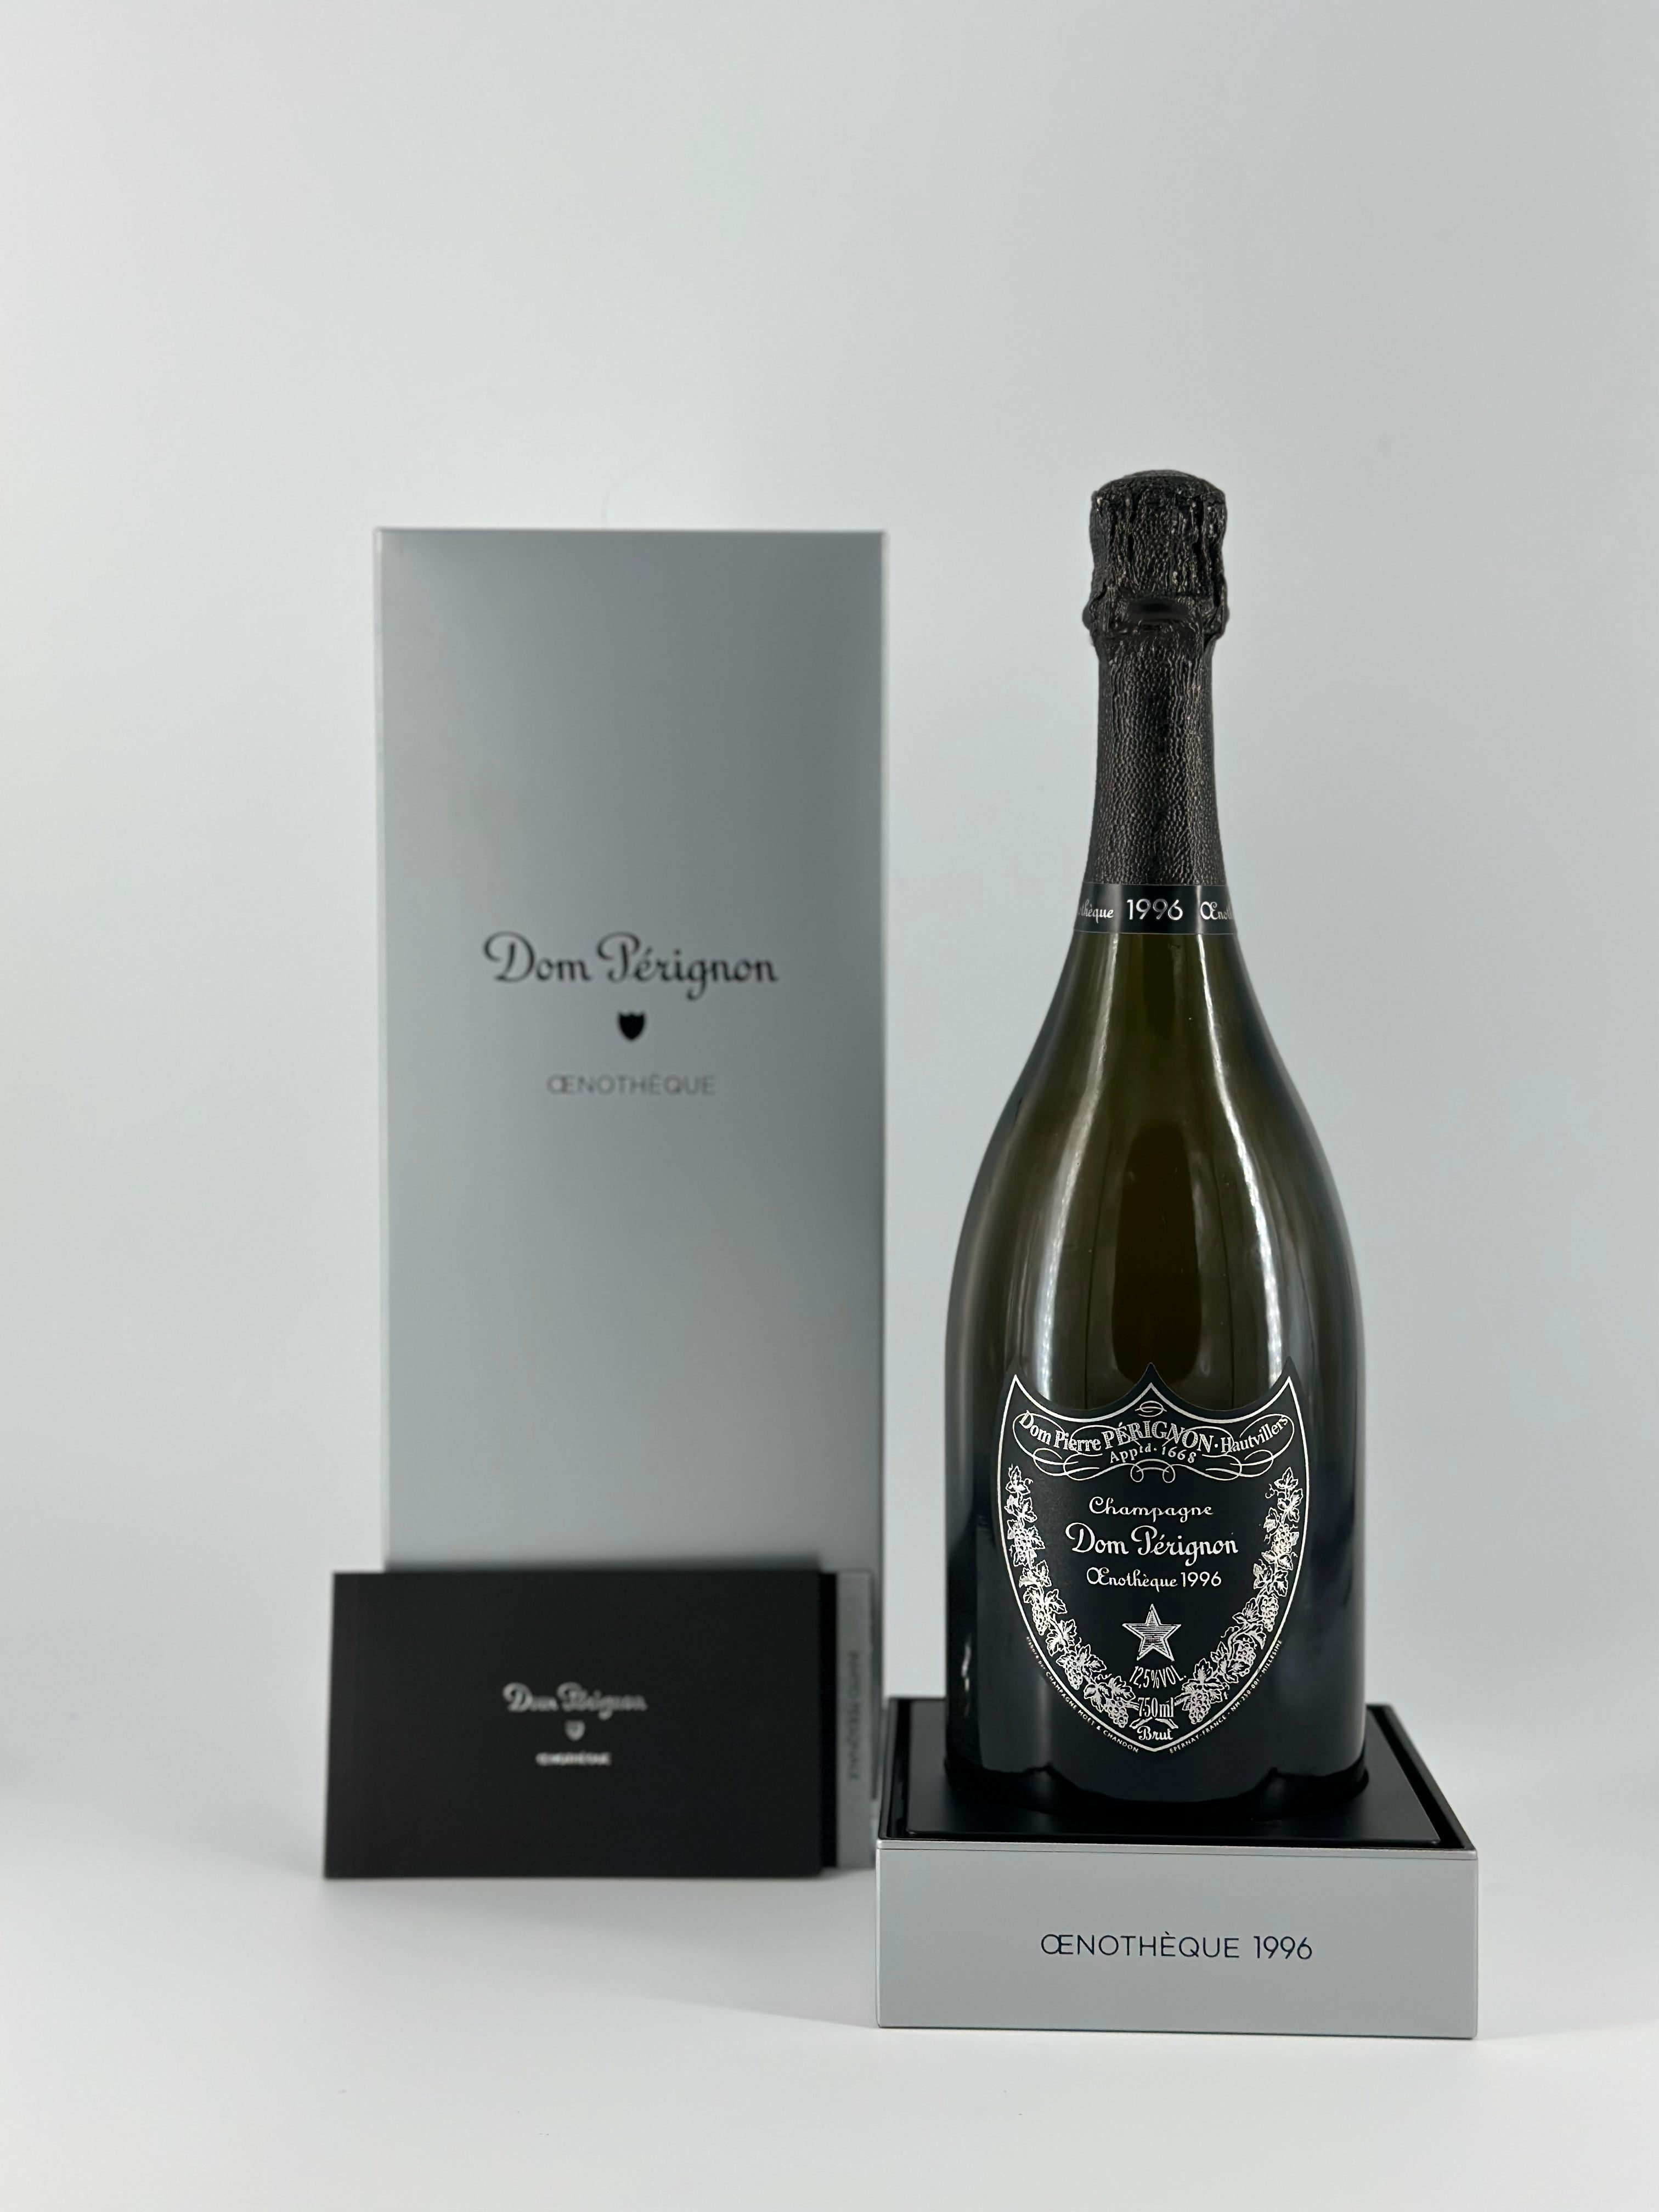 Dom Pérignon Oenothèque 1996 Champagne AOC Oenothèque 1996 